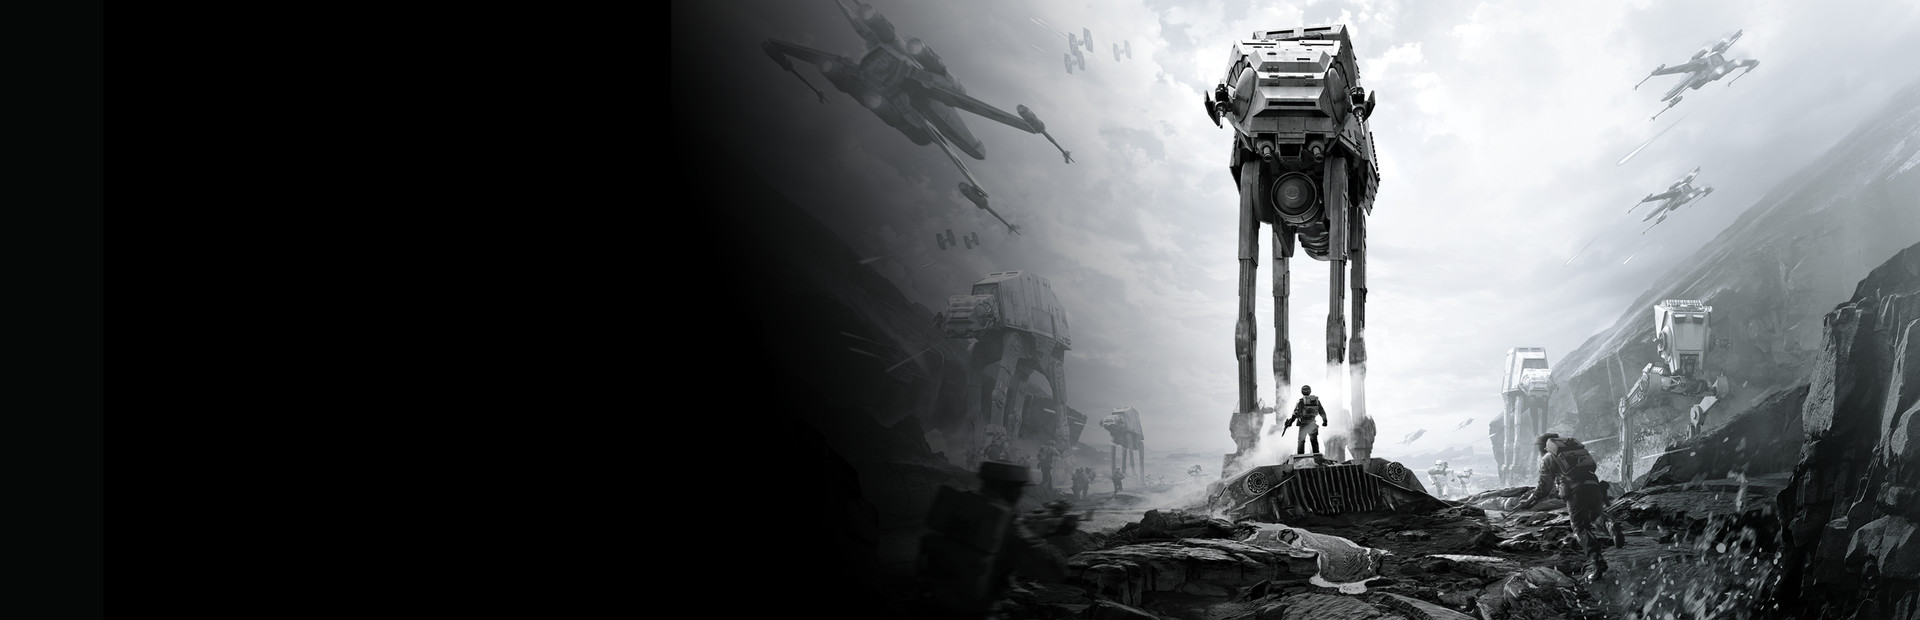 STAR WARS™ Battlefront cover image